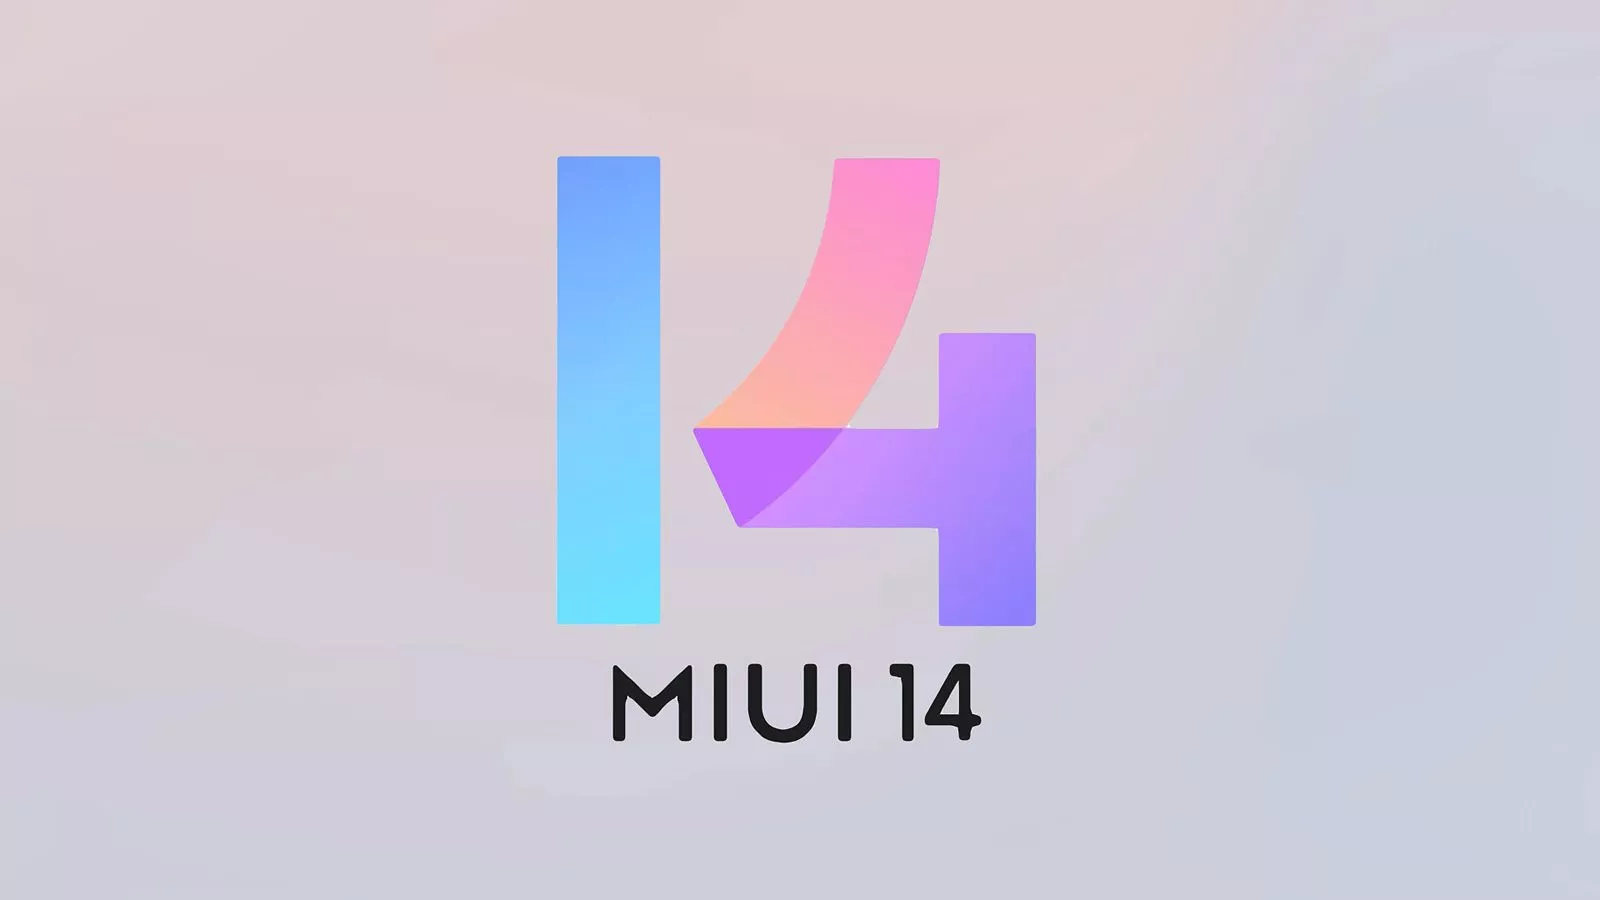 Le fond d'écran original de MIUI 14 est maintenant disponible en téléchargement.